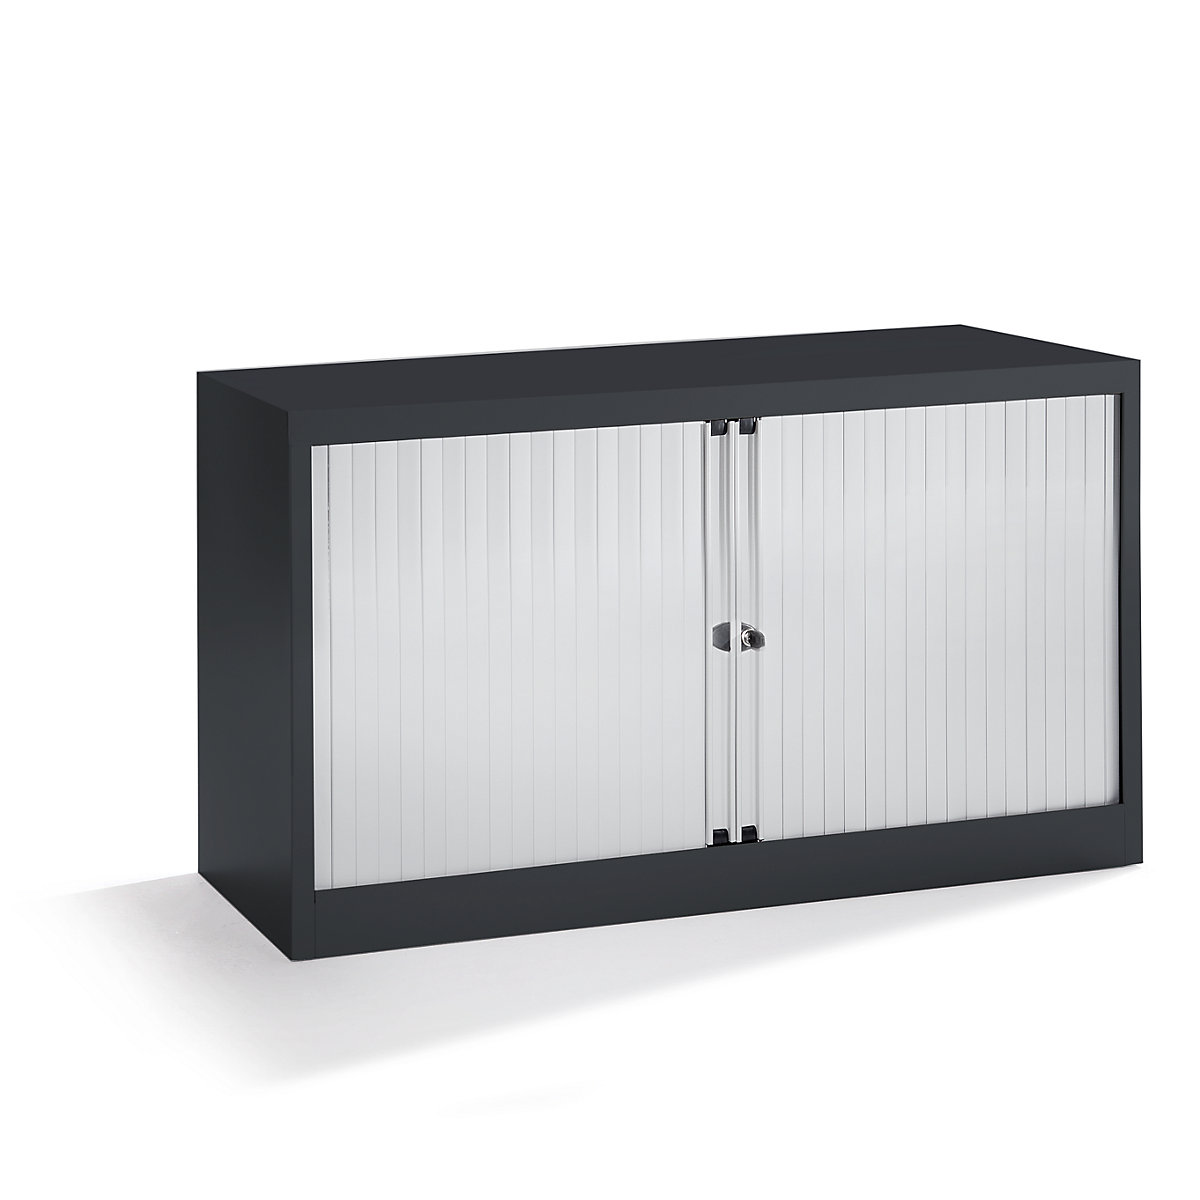 EURO roller shutter cupboard – BISLEY, width 1200 mm, 1 shelf, jet black / light grey-6